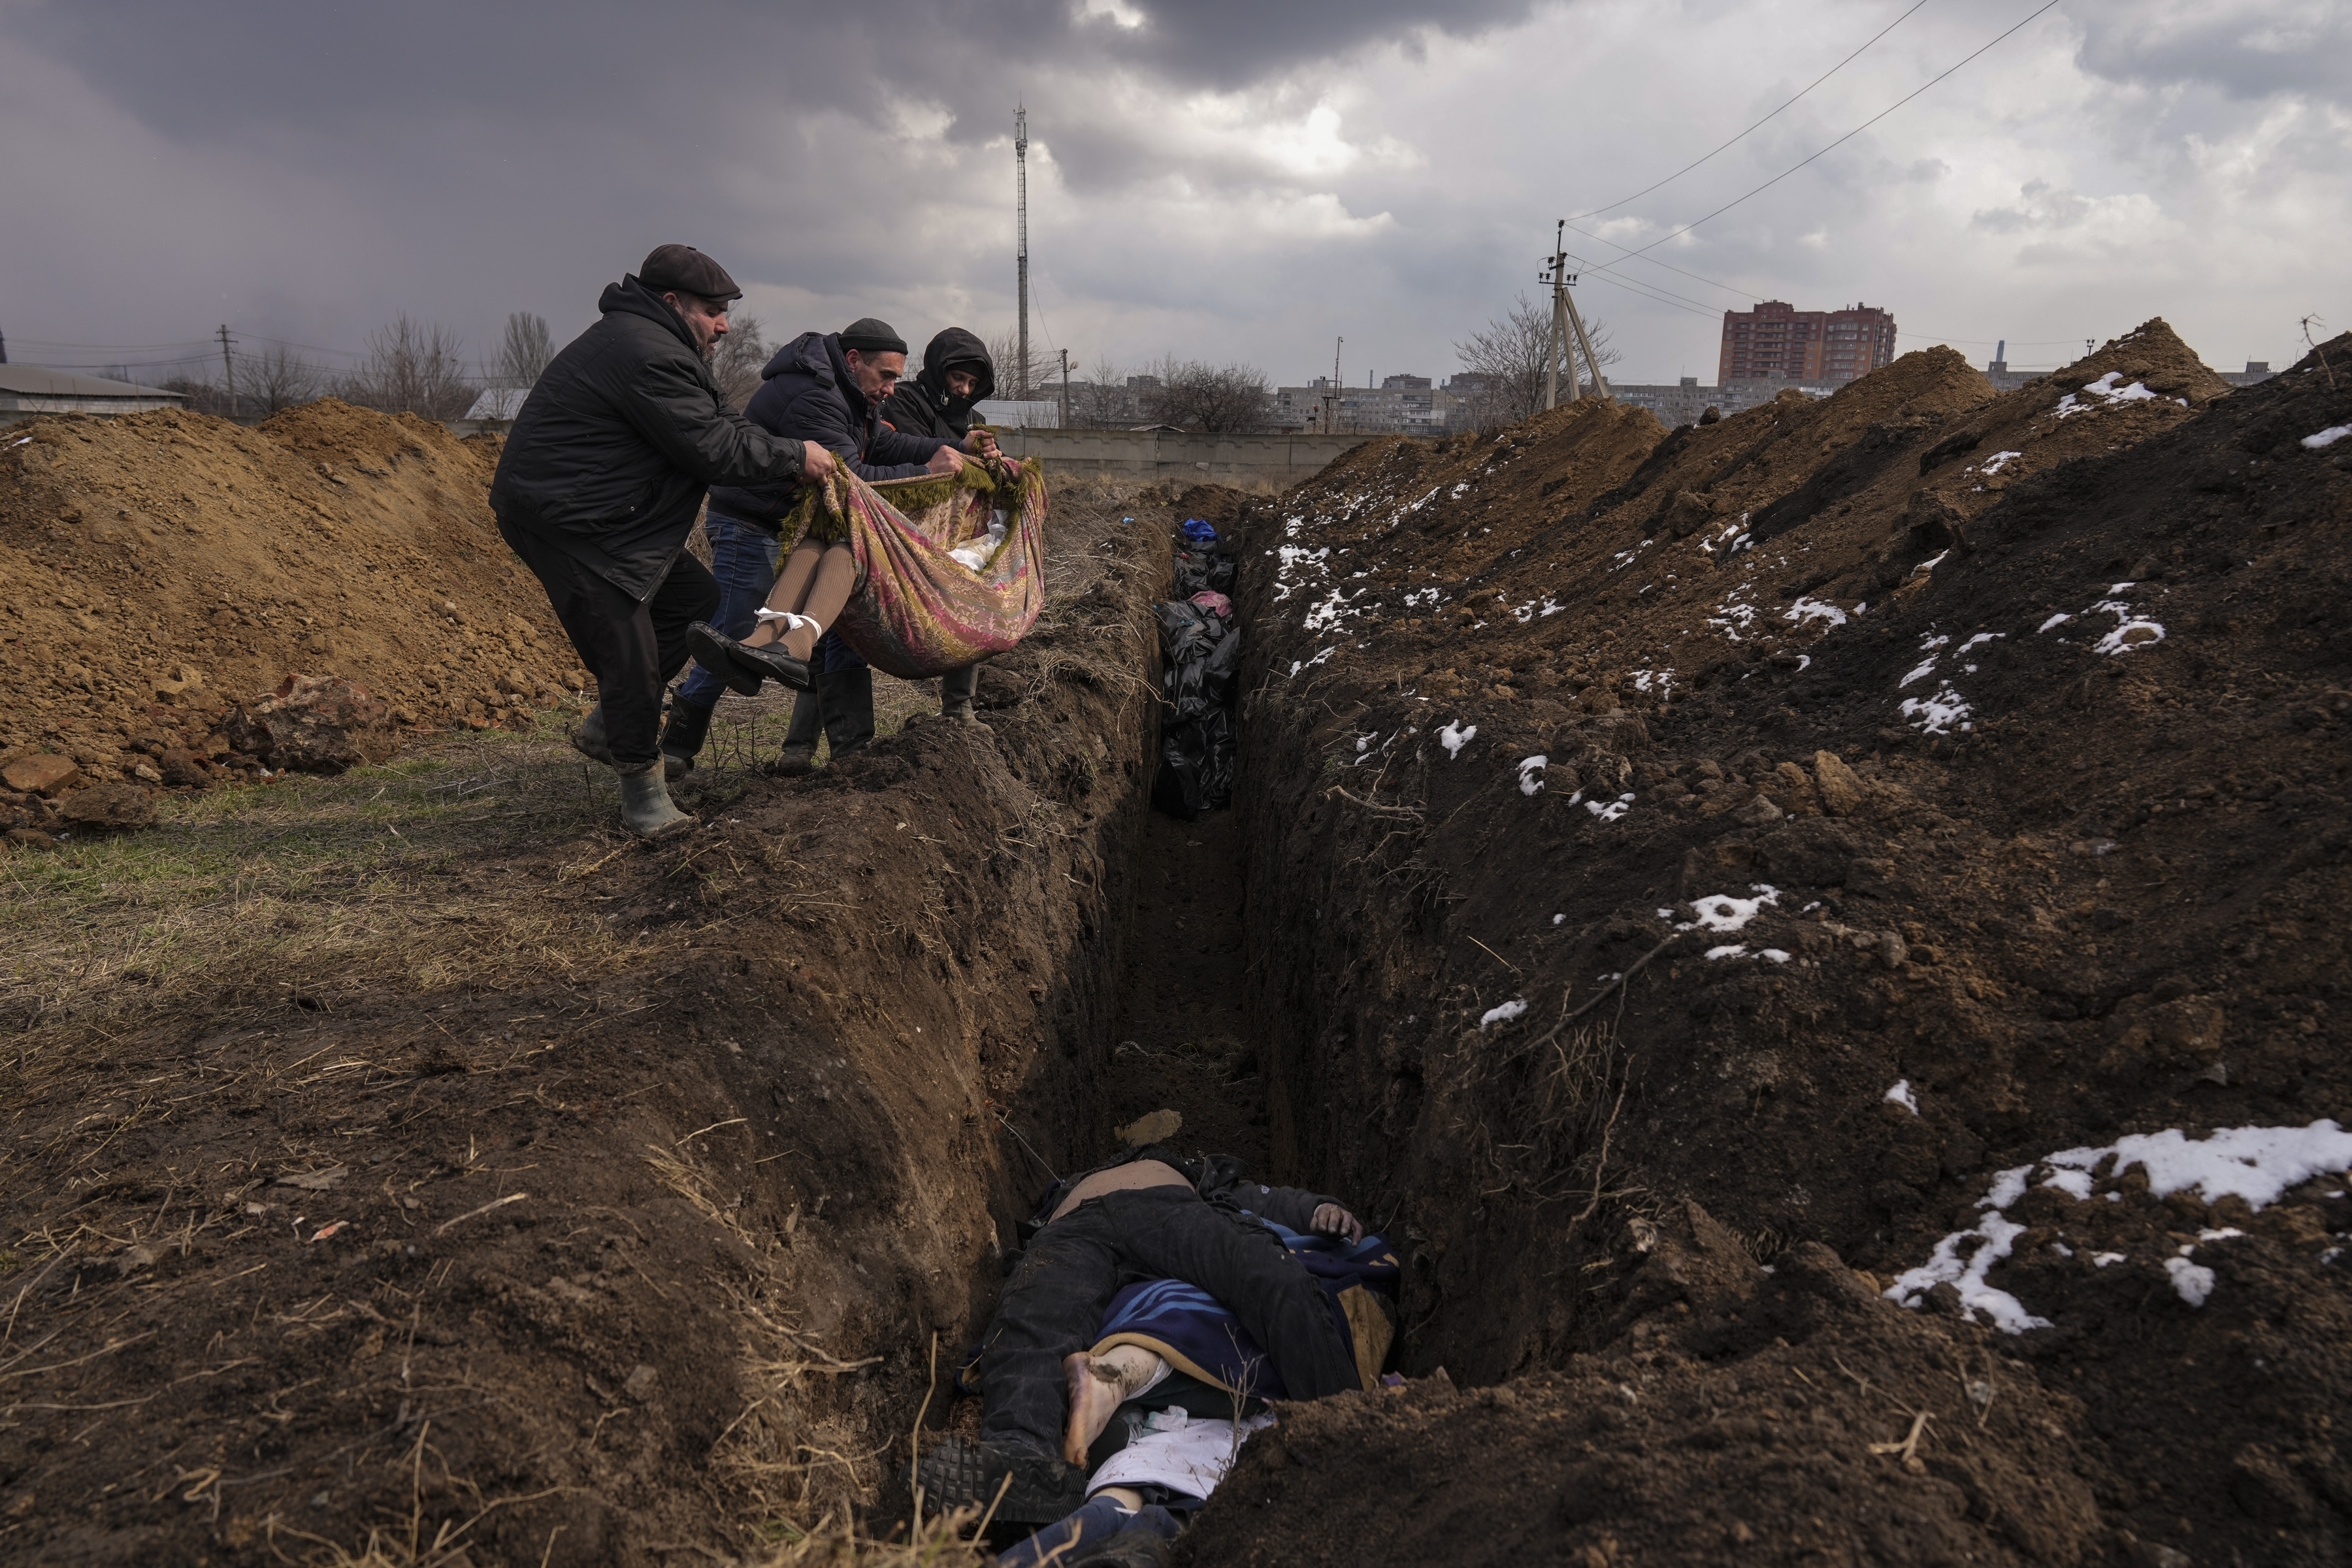 Los cuerpos se colocan en una fosa común en las afueras de Mariupol, Ucrania, el 9 de marzo de 2022 (Foto AP/Evgeniy Maloletka)